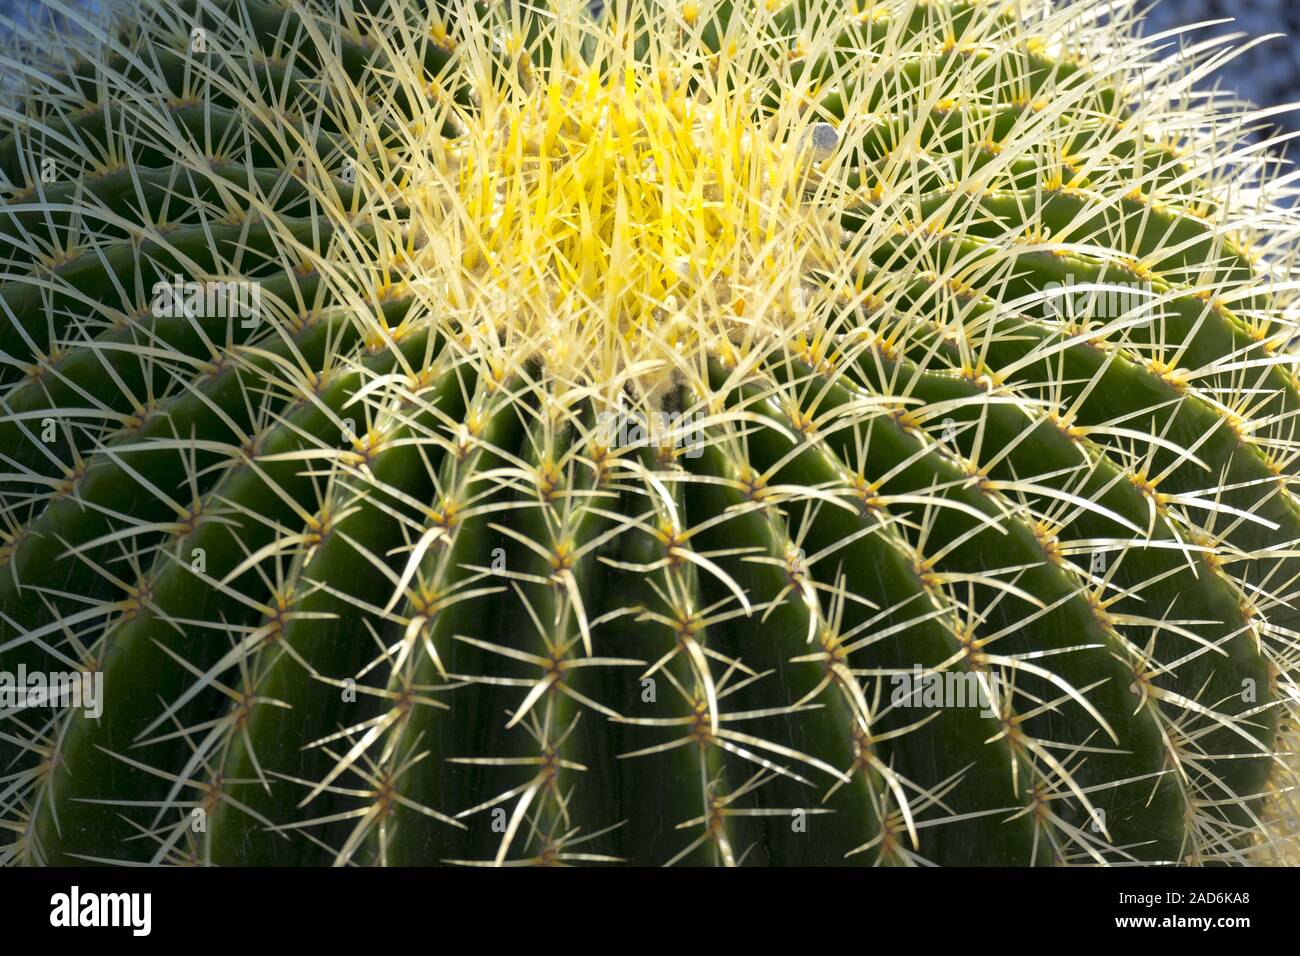 Gold ball cactus (Echinocactus grusonii) Stock Photo